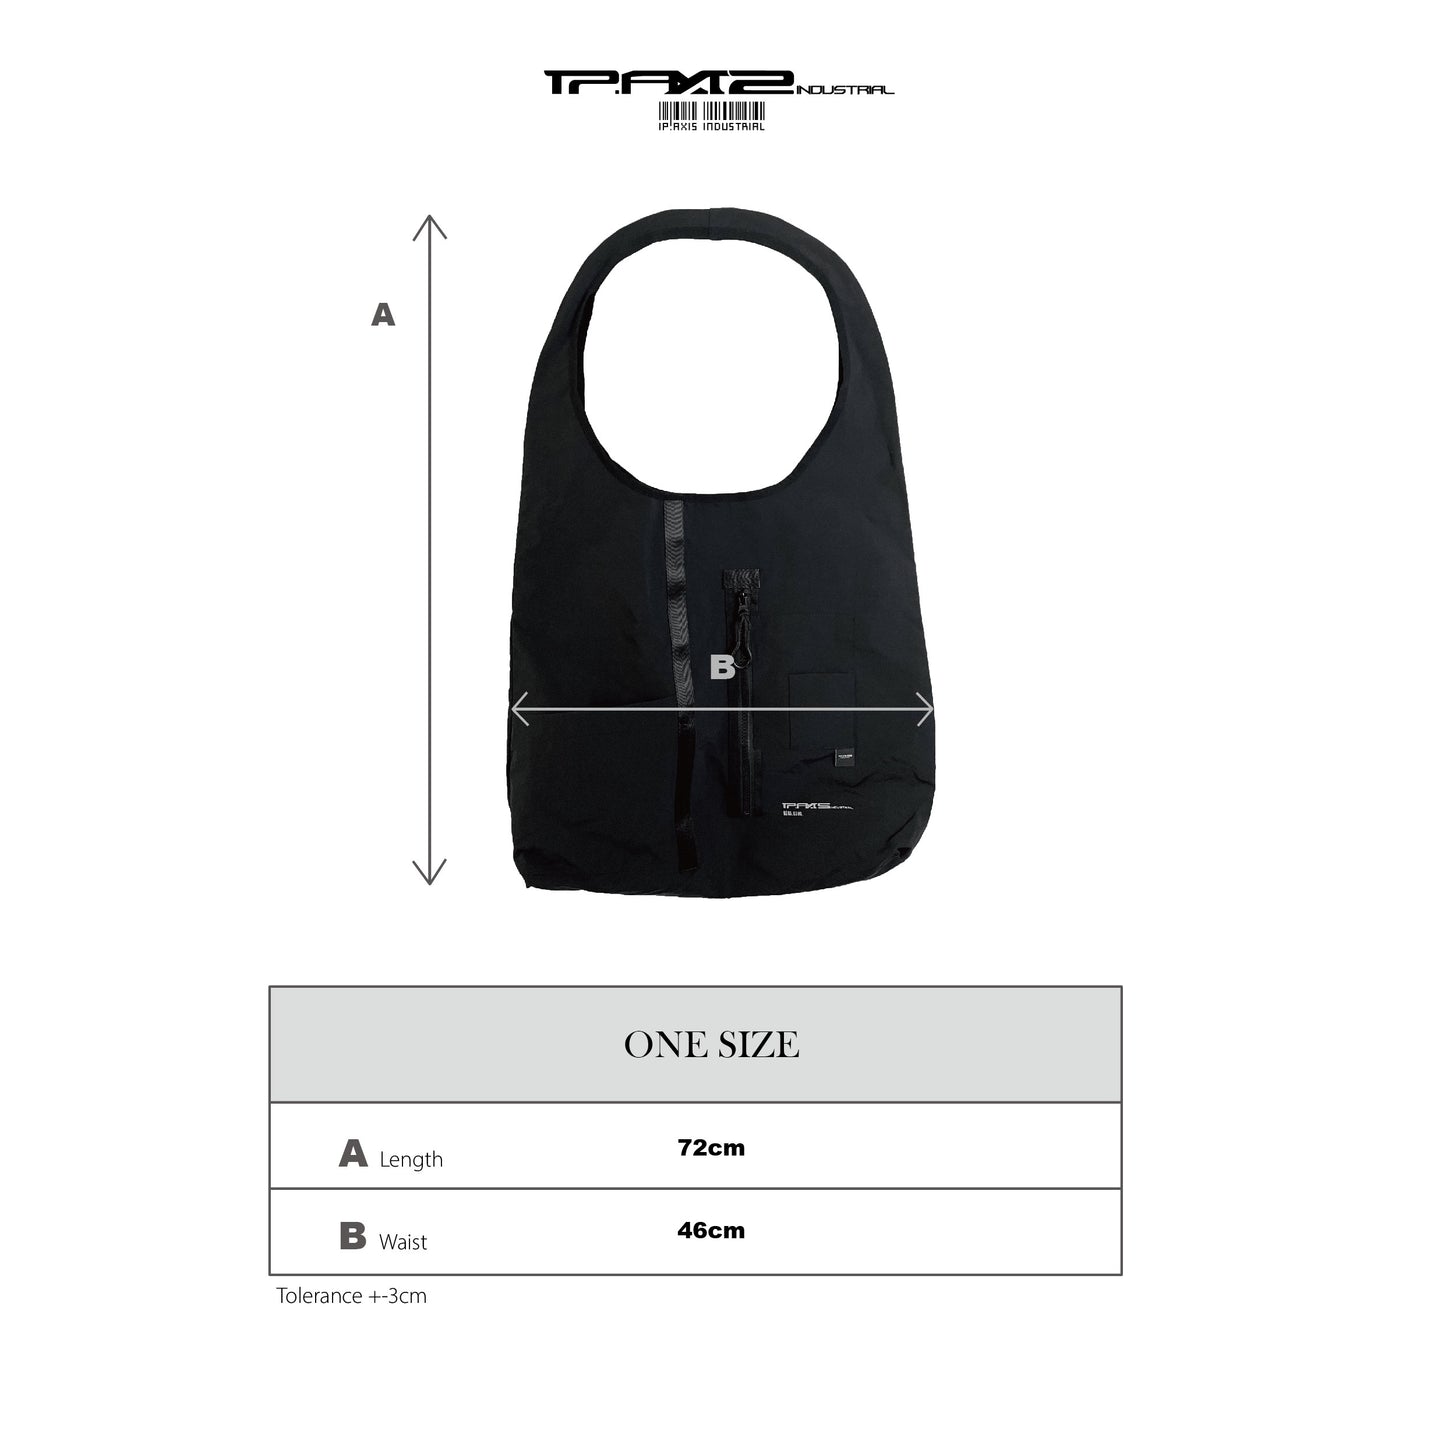 瓦黑色機能肩袋 Functional Tote bag